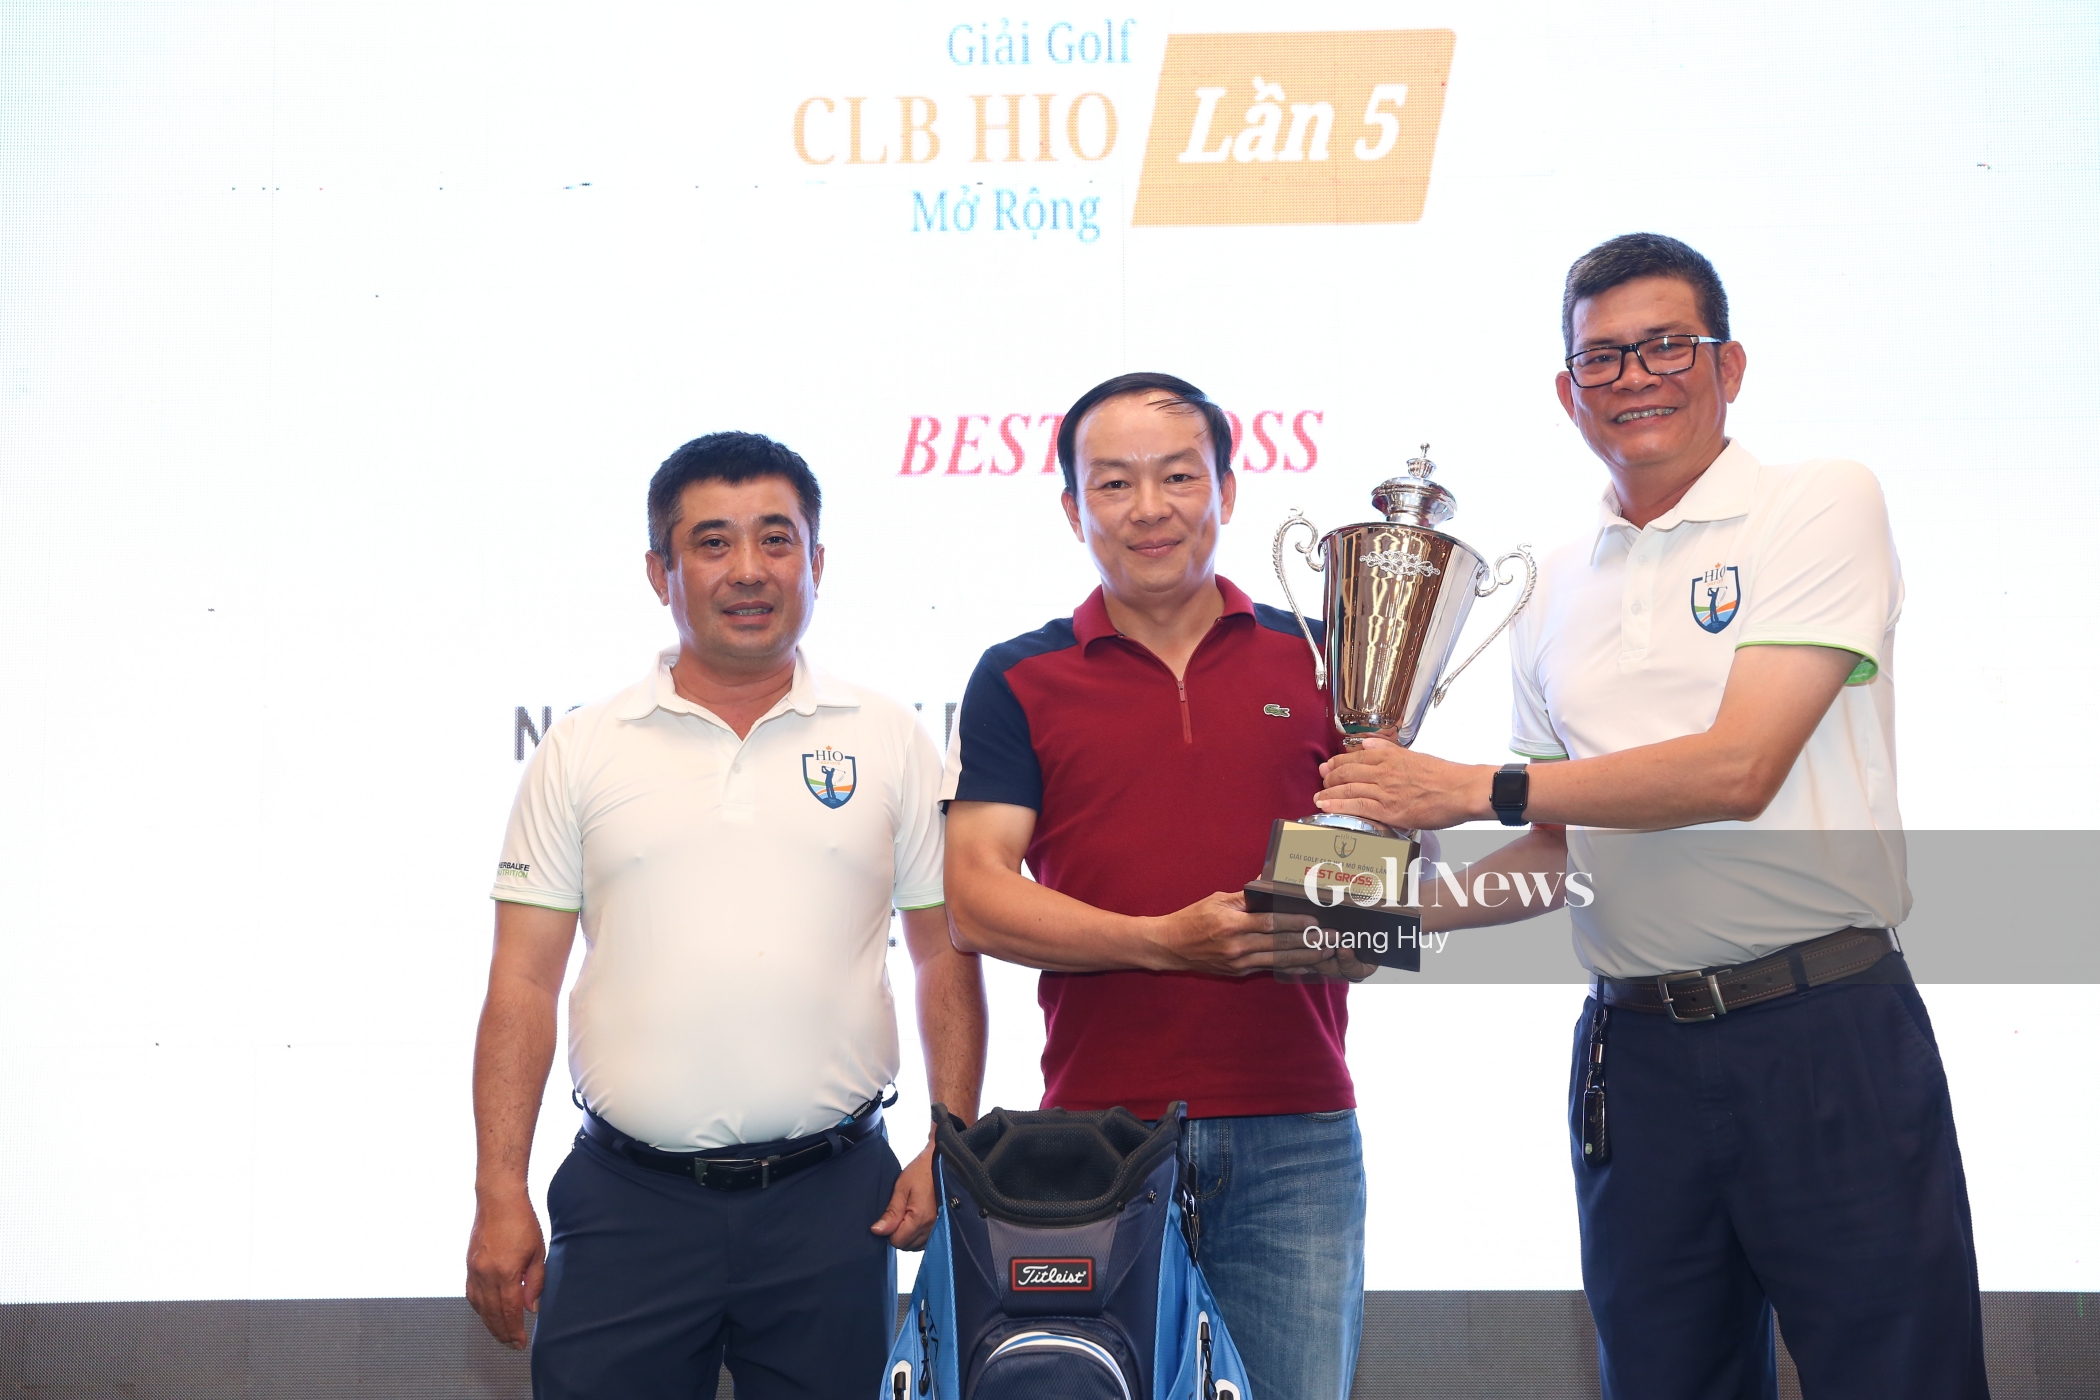 Golfer Nguyễn Huy Dũng giành Best Gross Giải Golf CLB HIO Mở rộng - Lần 5